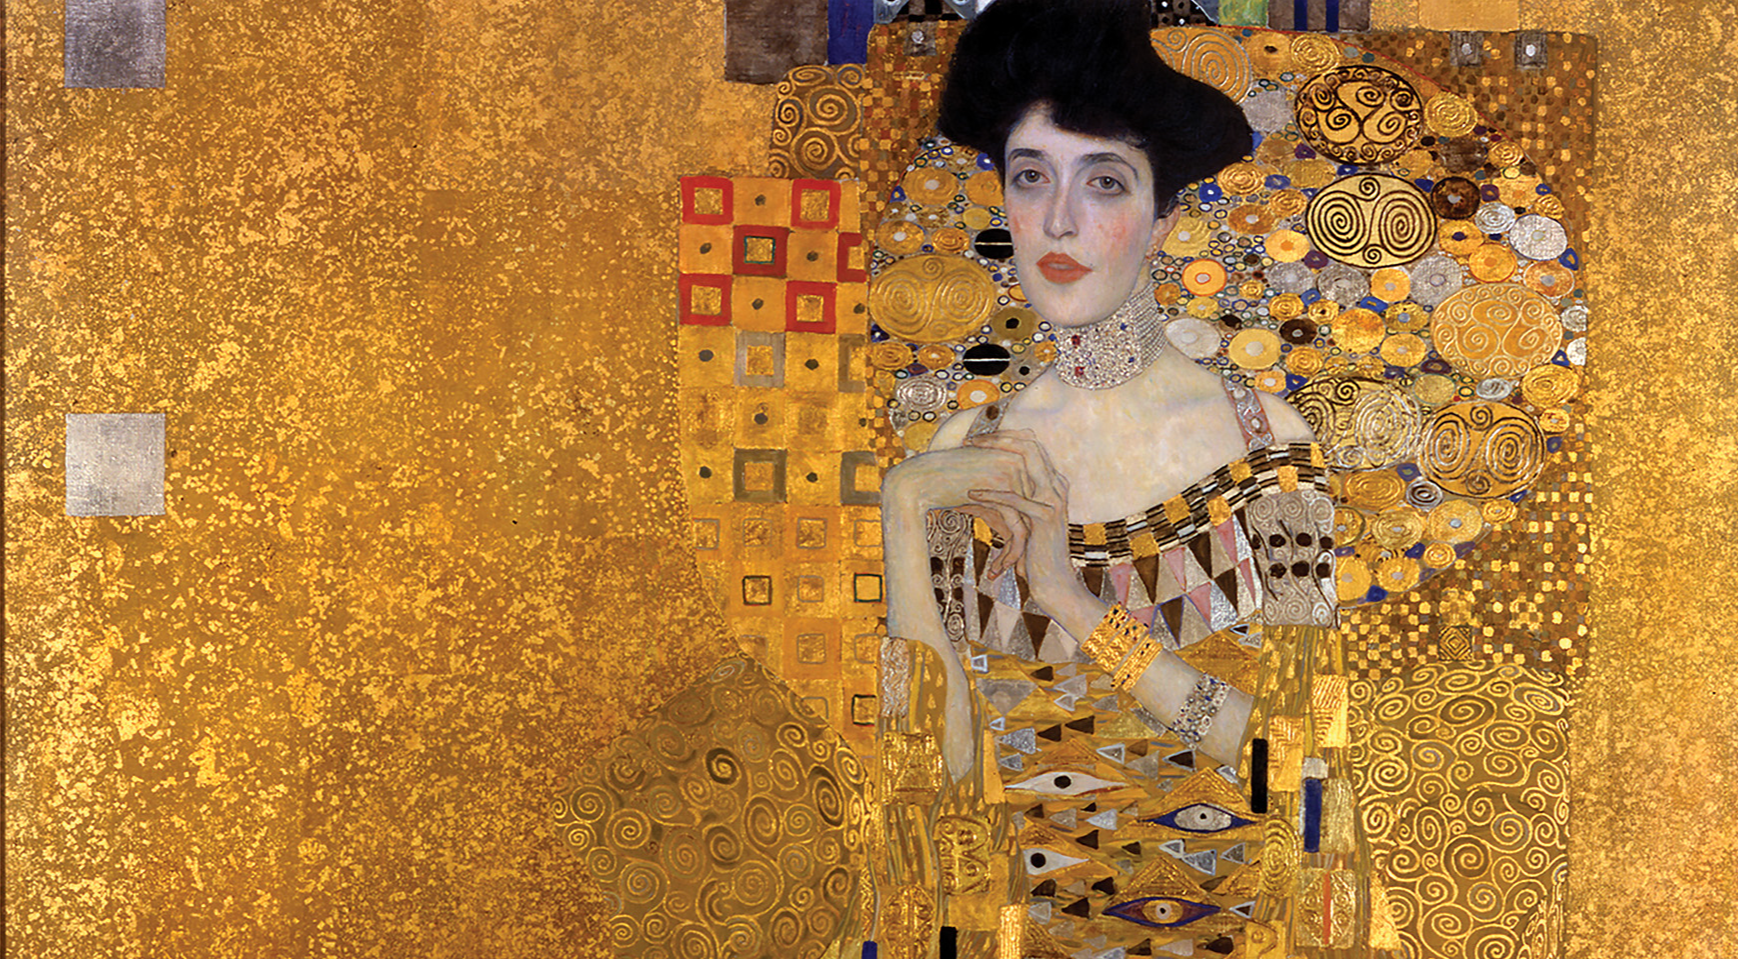 Qustav Klimt